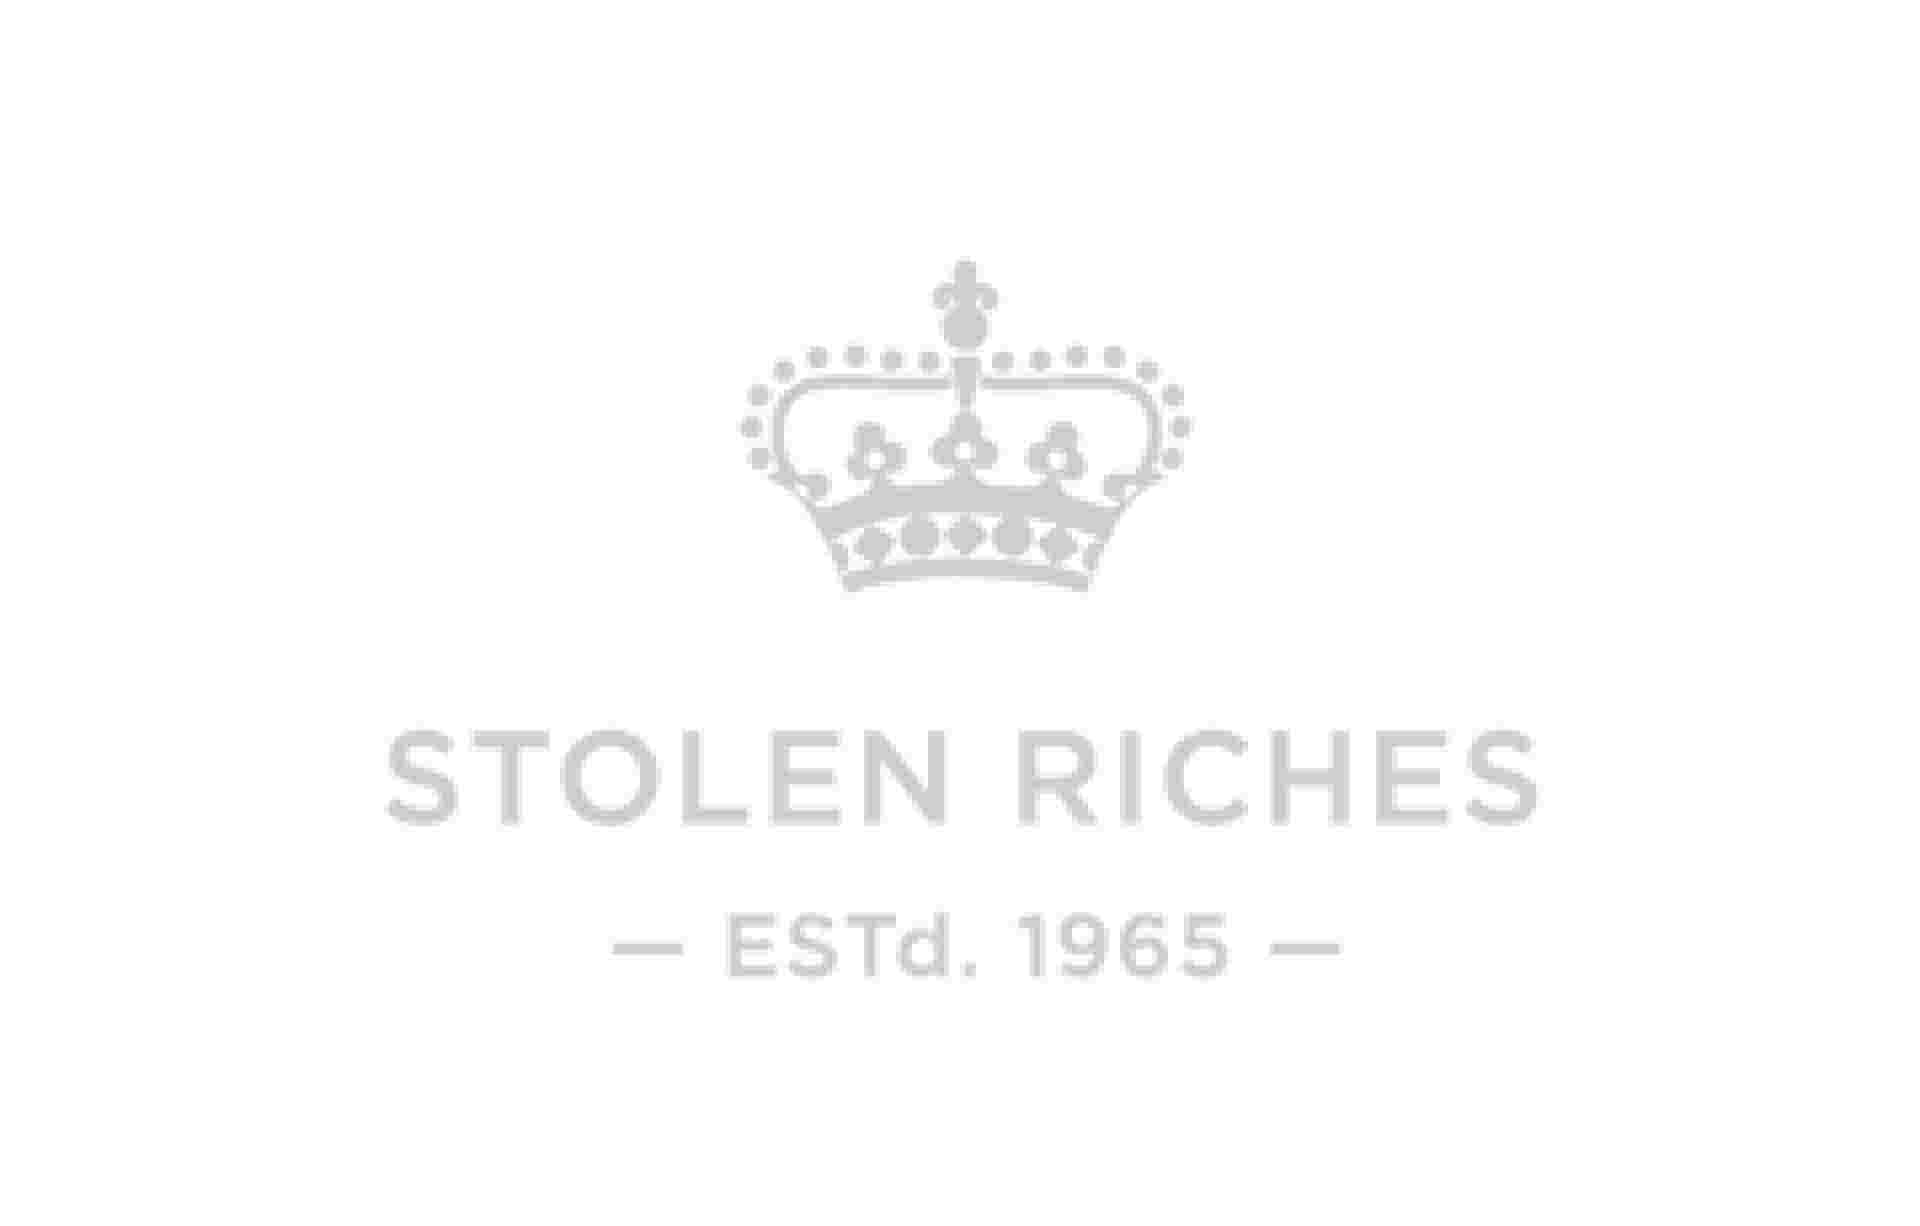 Identity / Naming - identity_stolen-riches_logo_2col